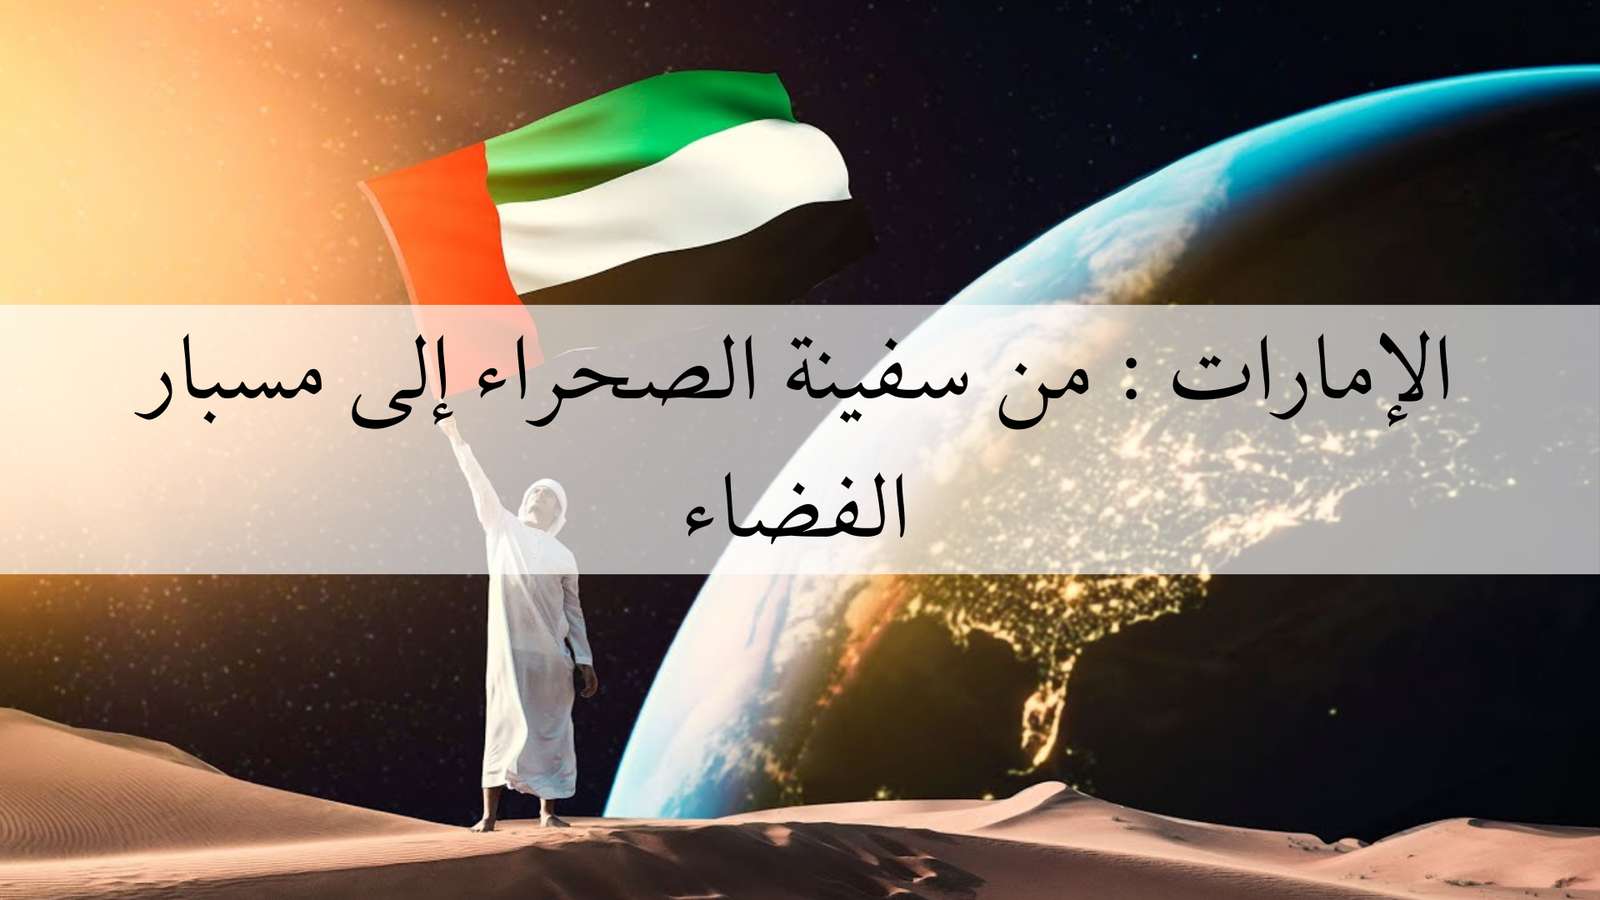 الإمارات: من سفينة الصحراء إلى مسبار الفضاء puzzle online from photo